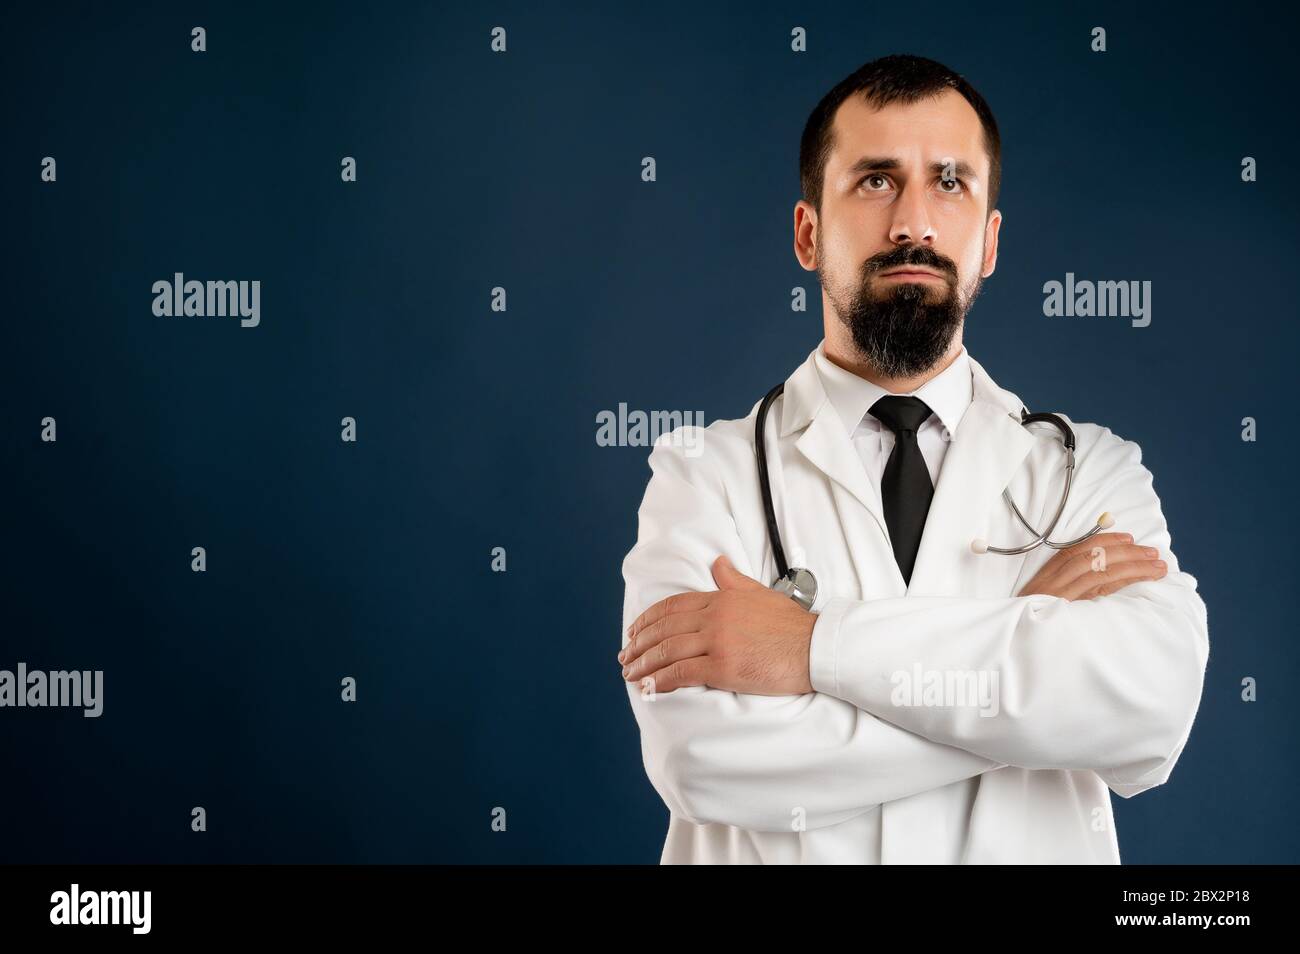 Ritratto di medico maschile con stetoscopio in uniforme medica aspetto sicuro eroe-shot posando su uno sfondo blu isolato. Foto Stock